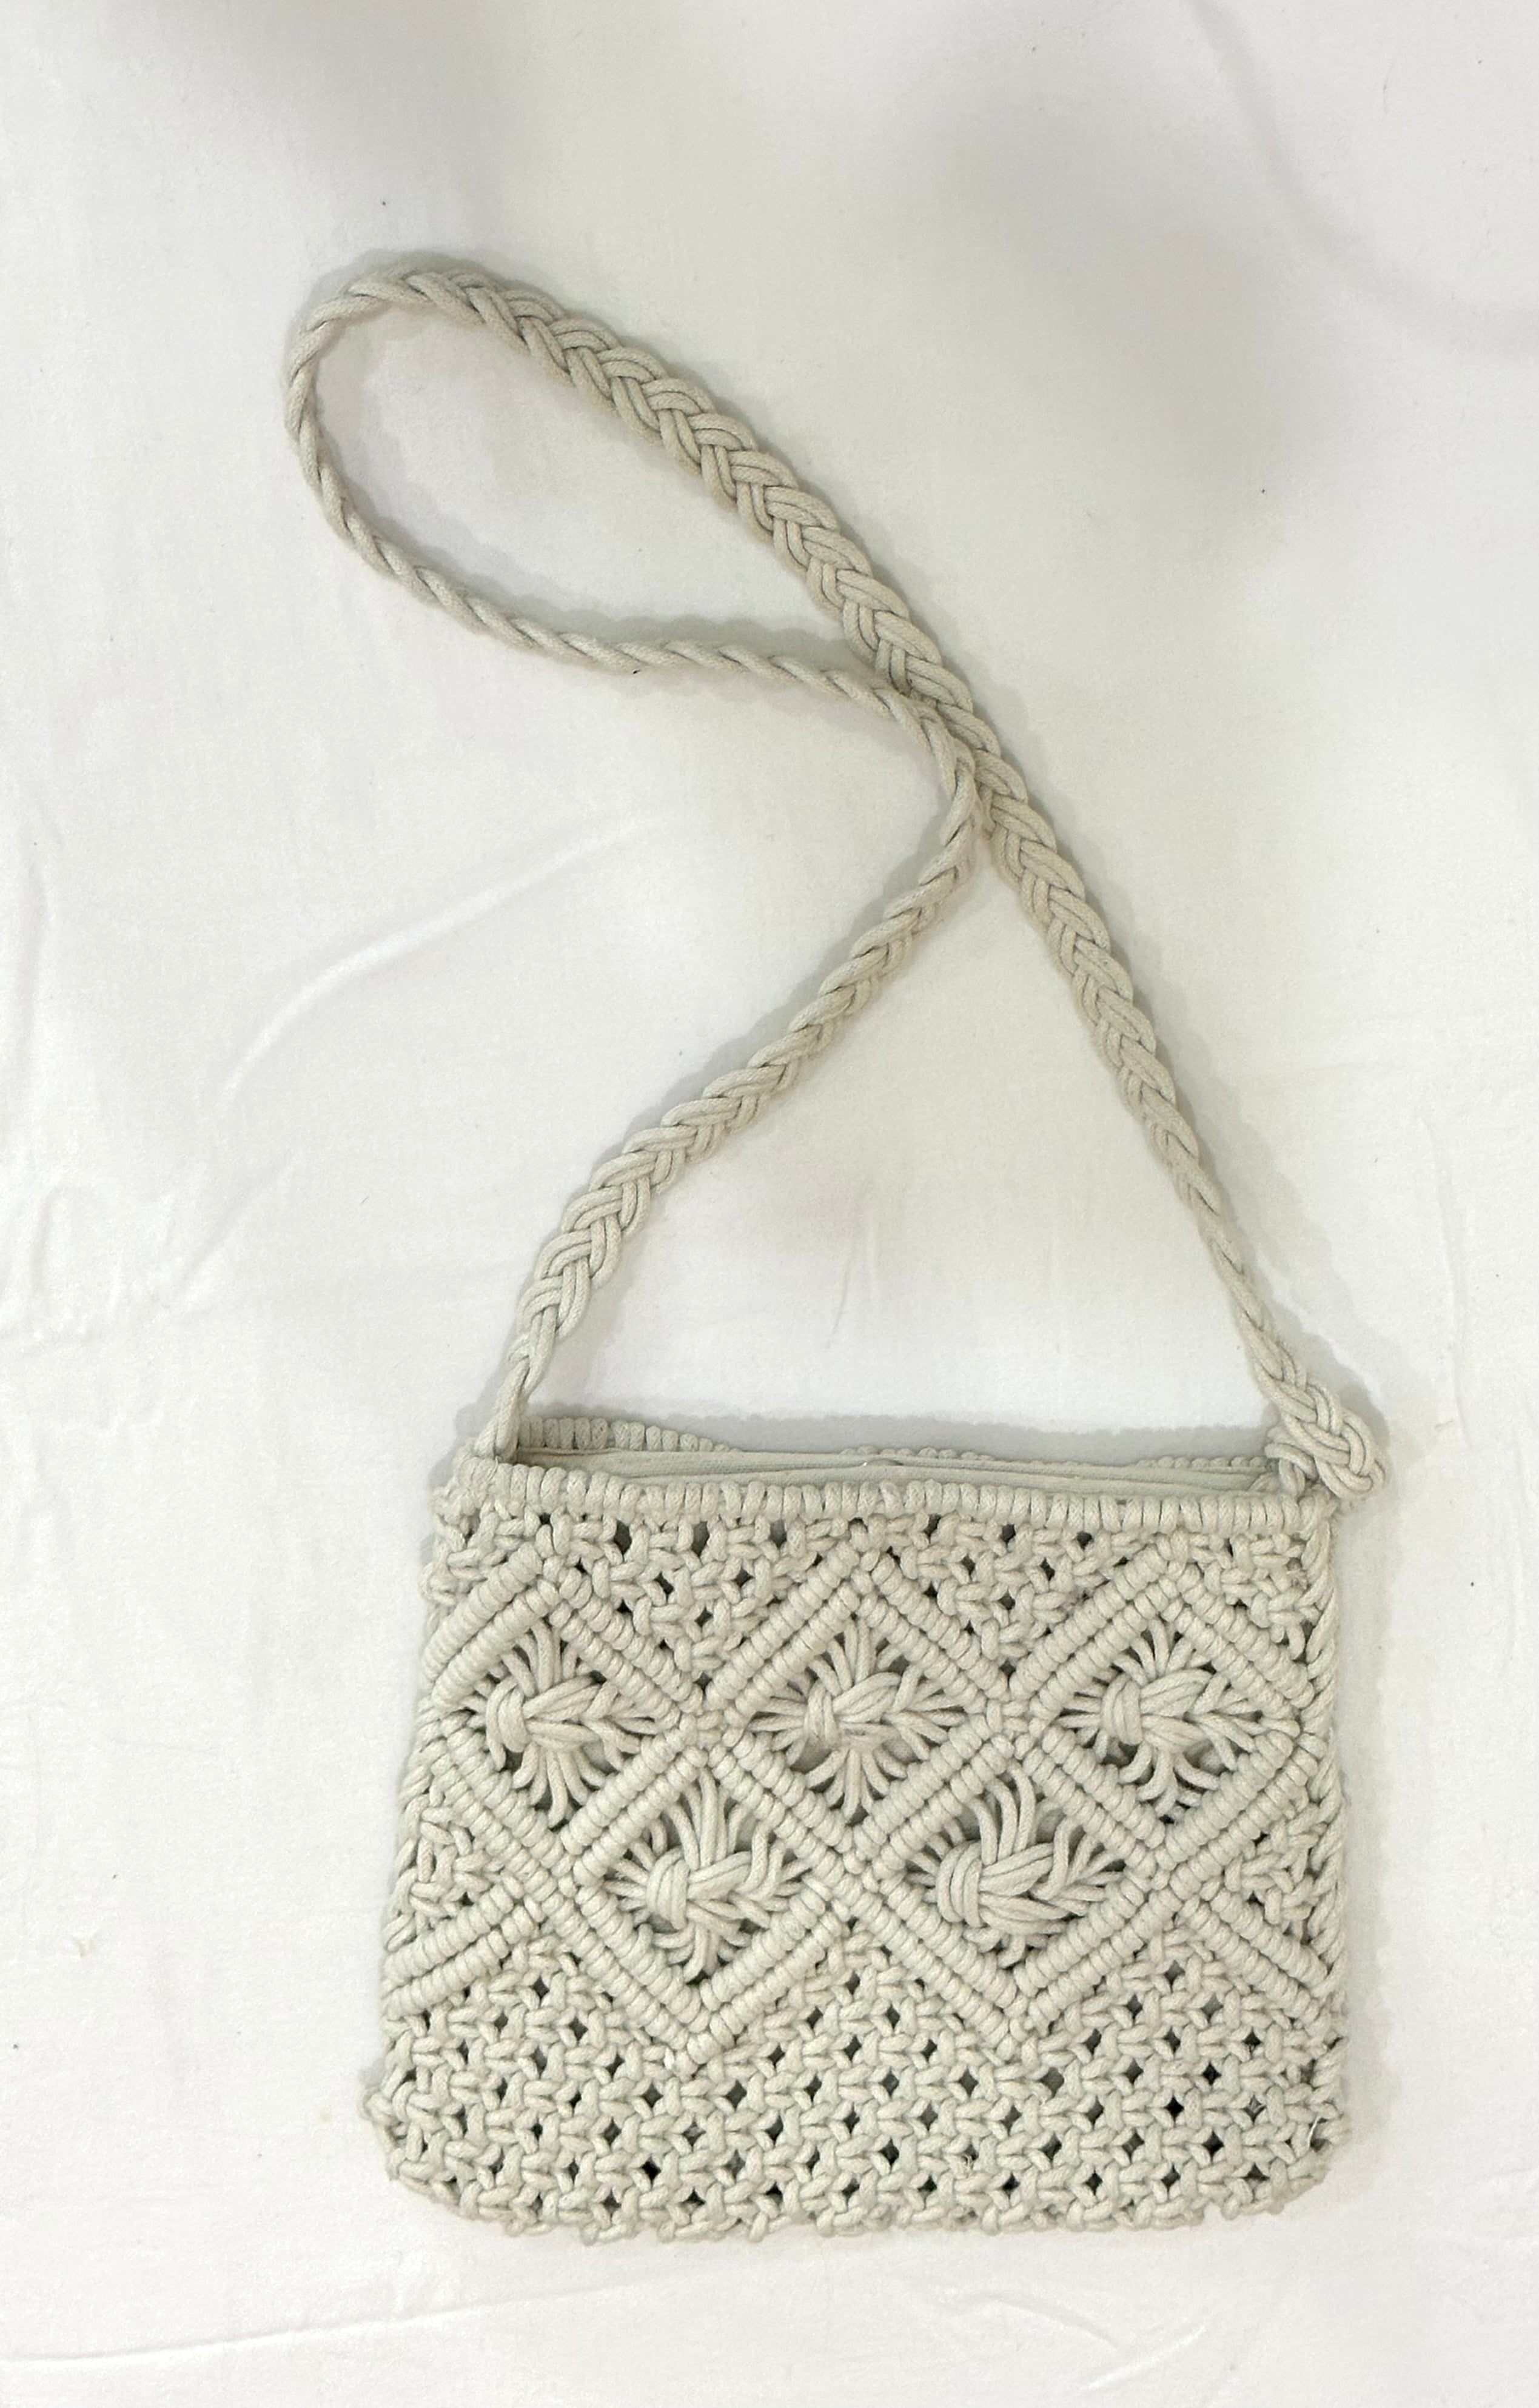 Macrame sling bag : r/crafts